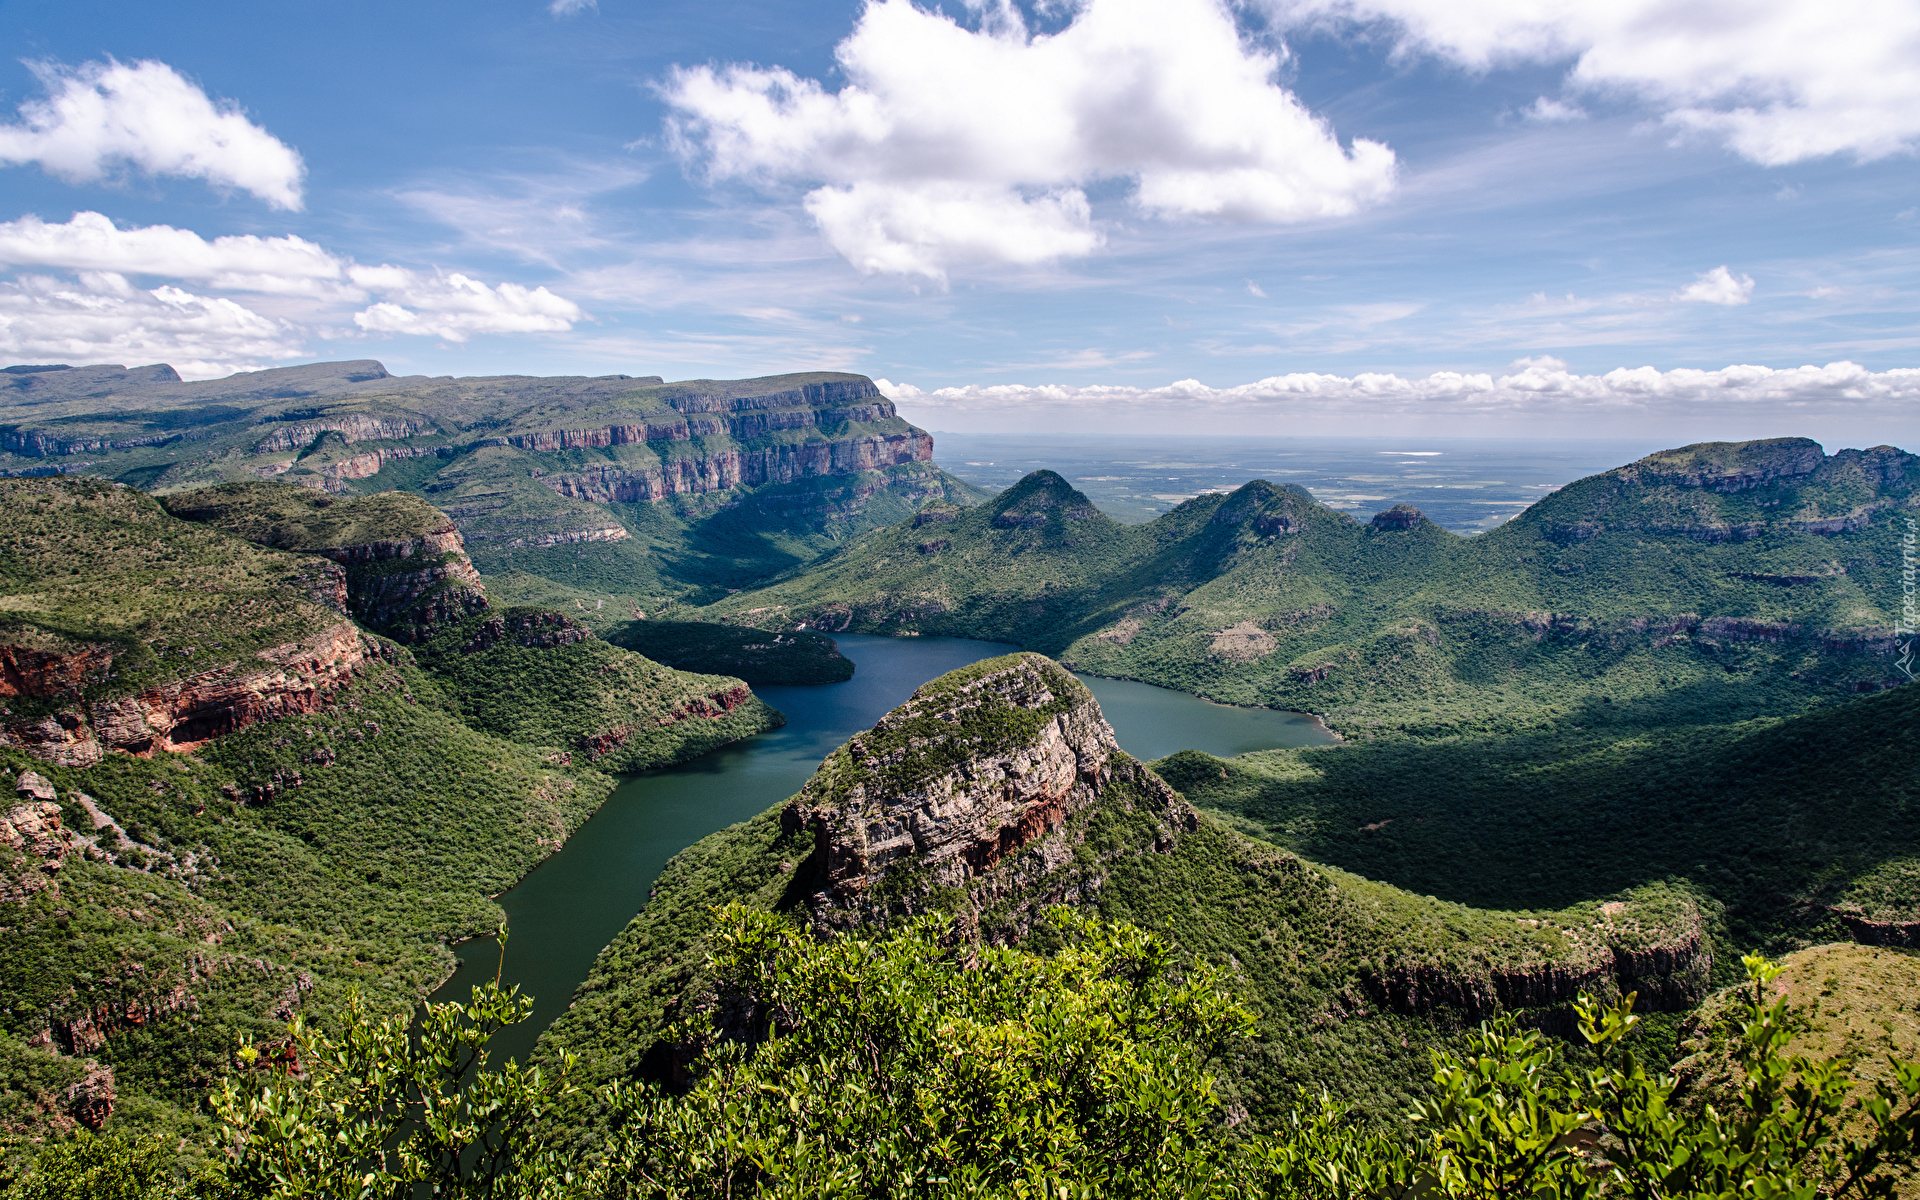 Góry Smocze, Kanion, Rzeka, Blyde River, Lasy, Drzewa, Chmury, Prowincja Mpumalanga, Republika Południowej Afryki